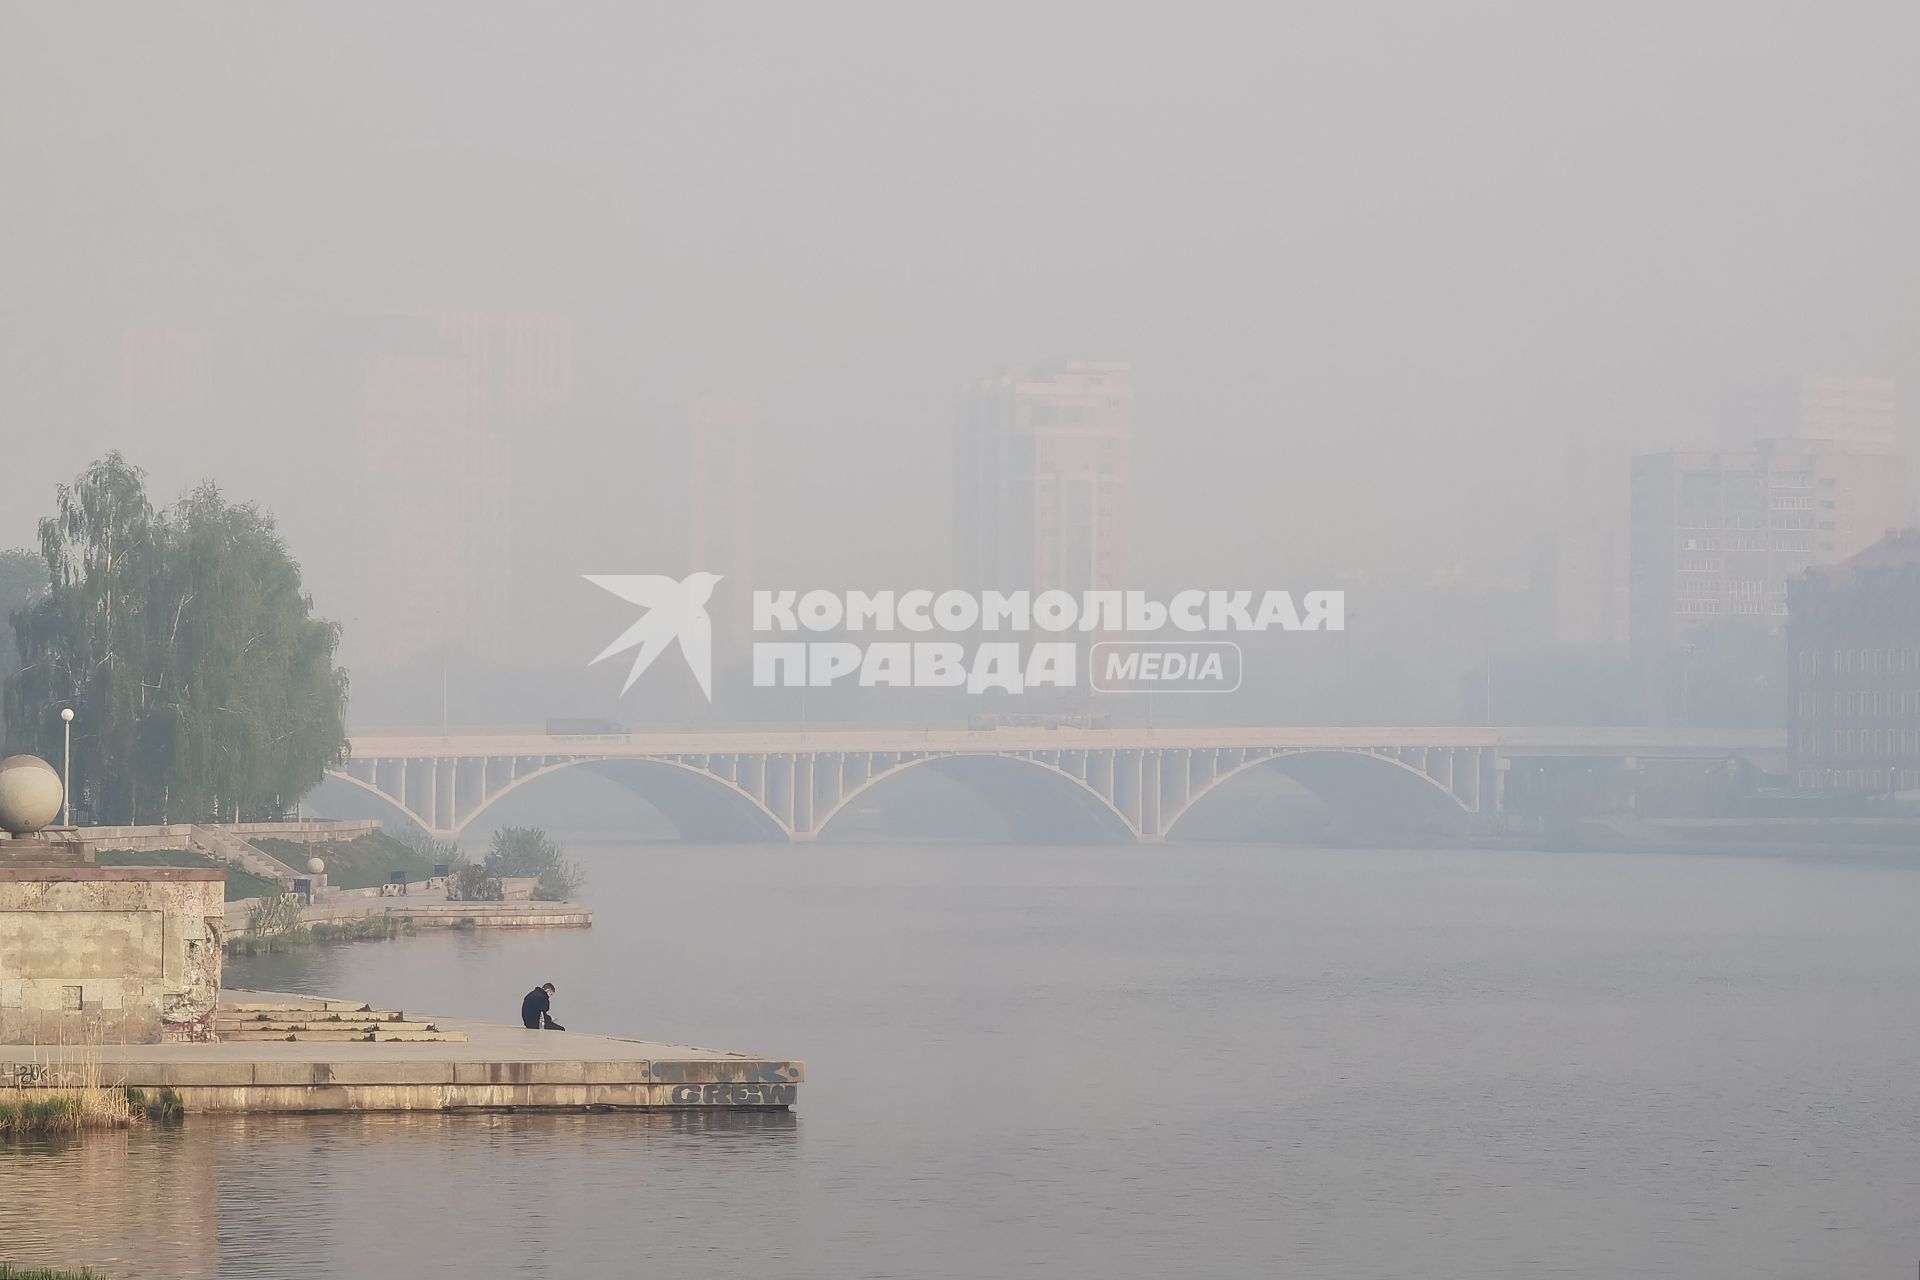 Екатеринбург. Вид на Макаровский мост во время смога из-за лесных пожаров